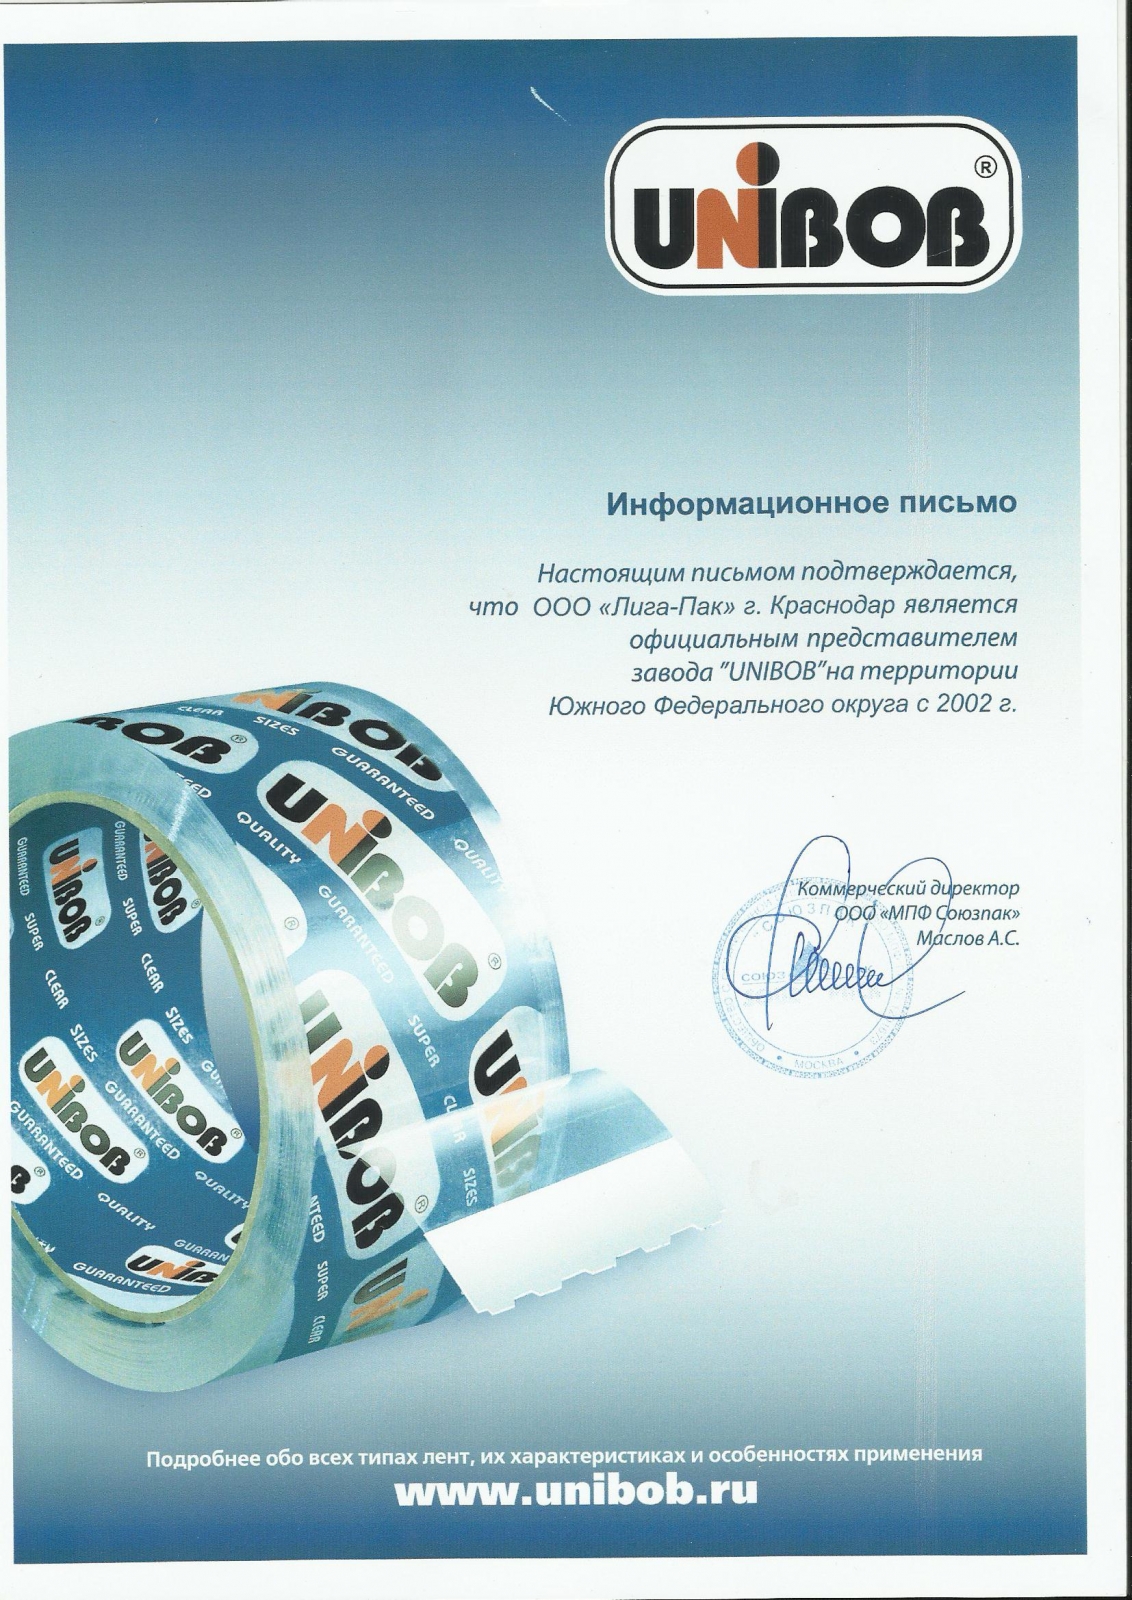 Официальное представительство завода UNIBOB